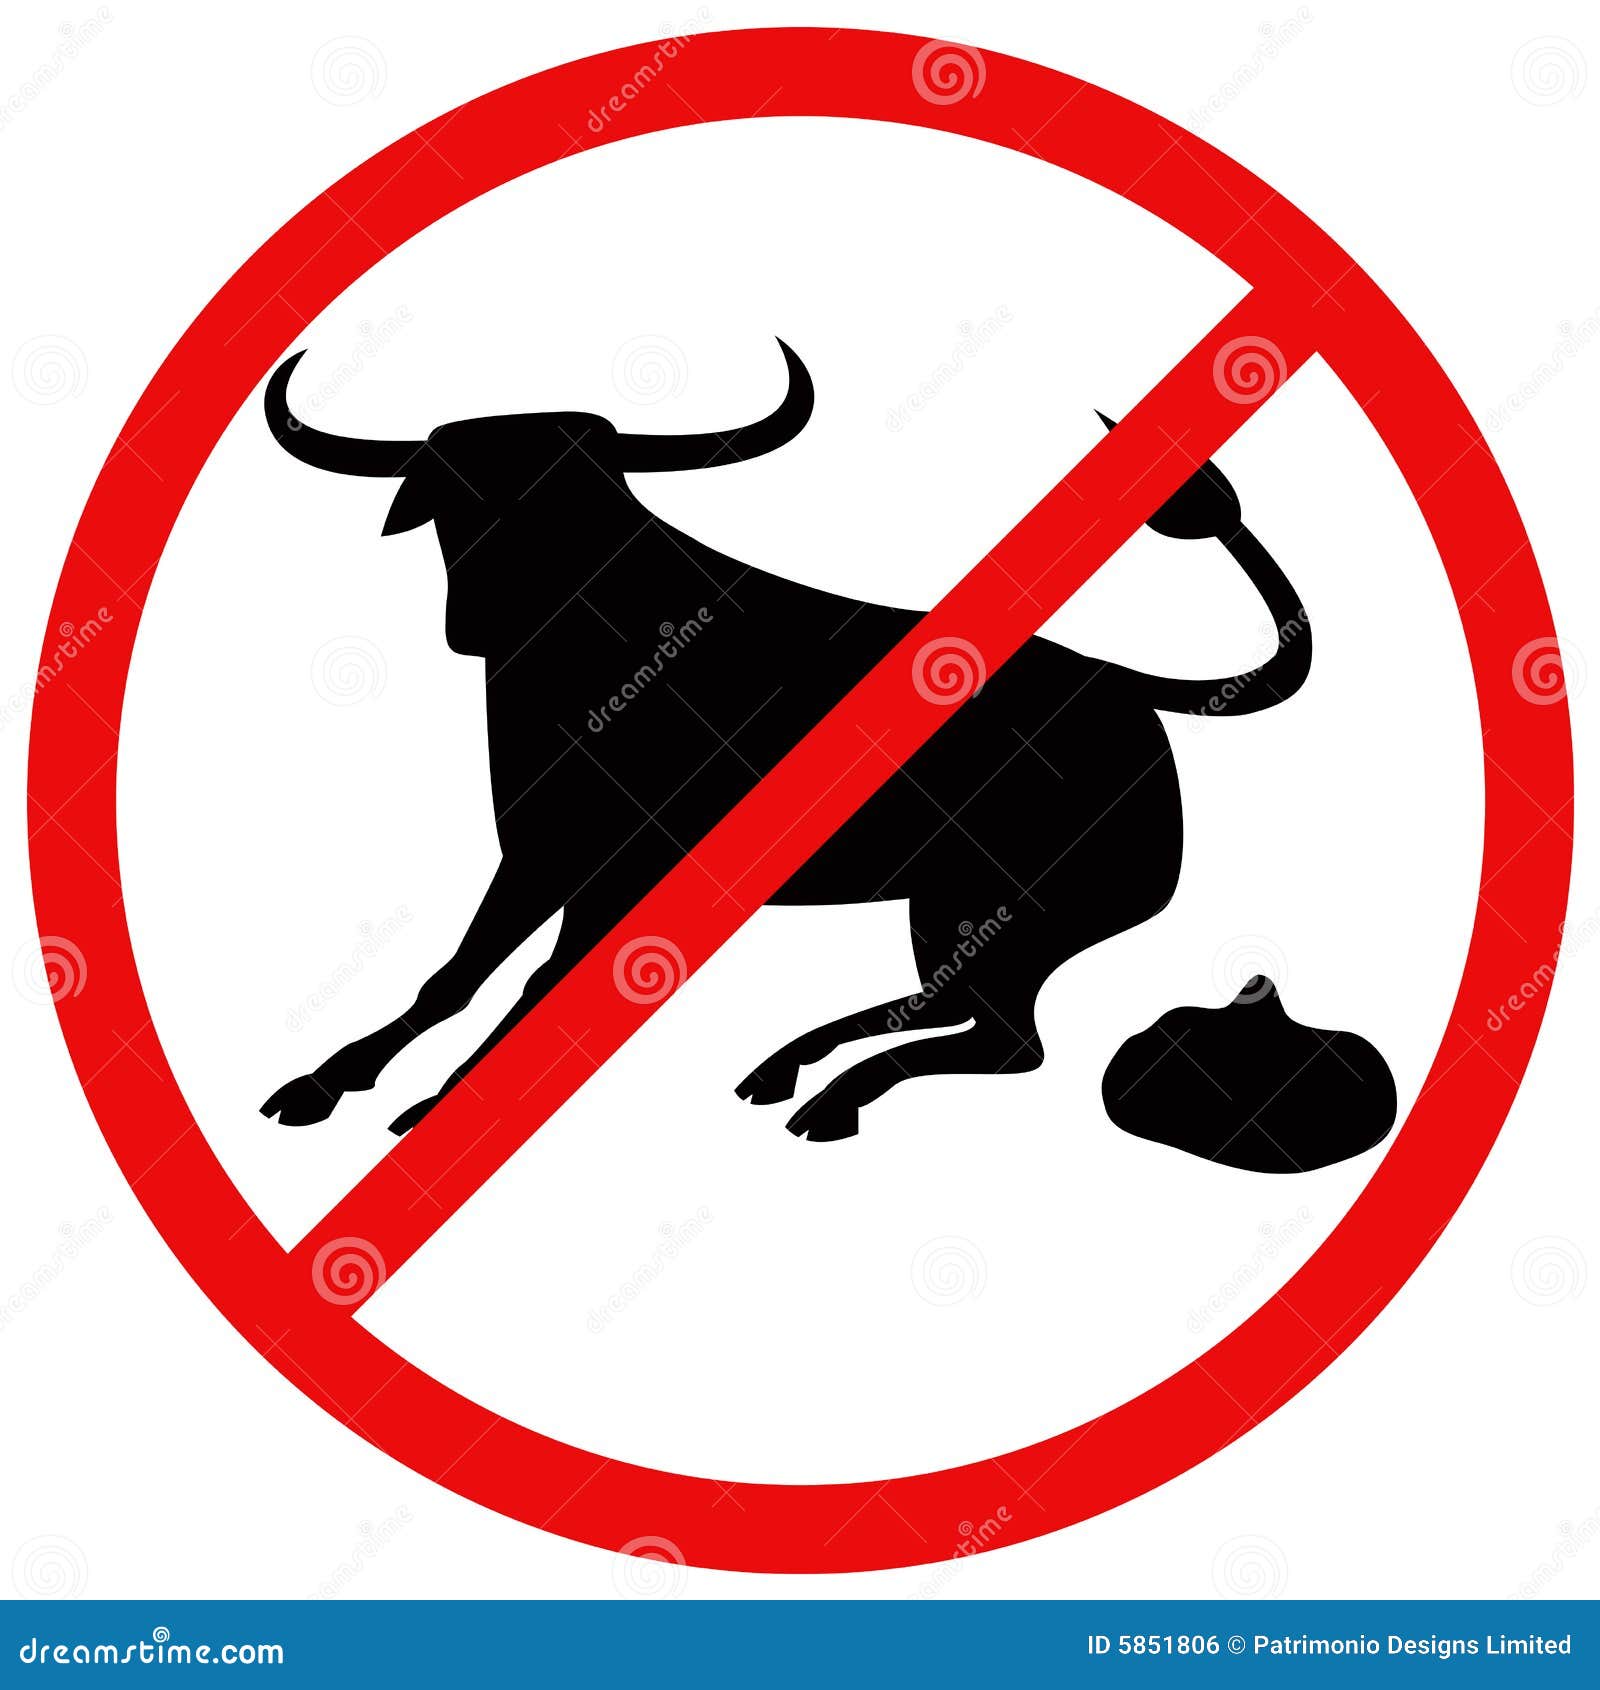 No Bull Signage Royalty Free Stock Image - Image: 5851806